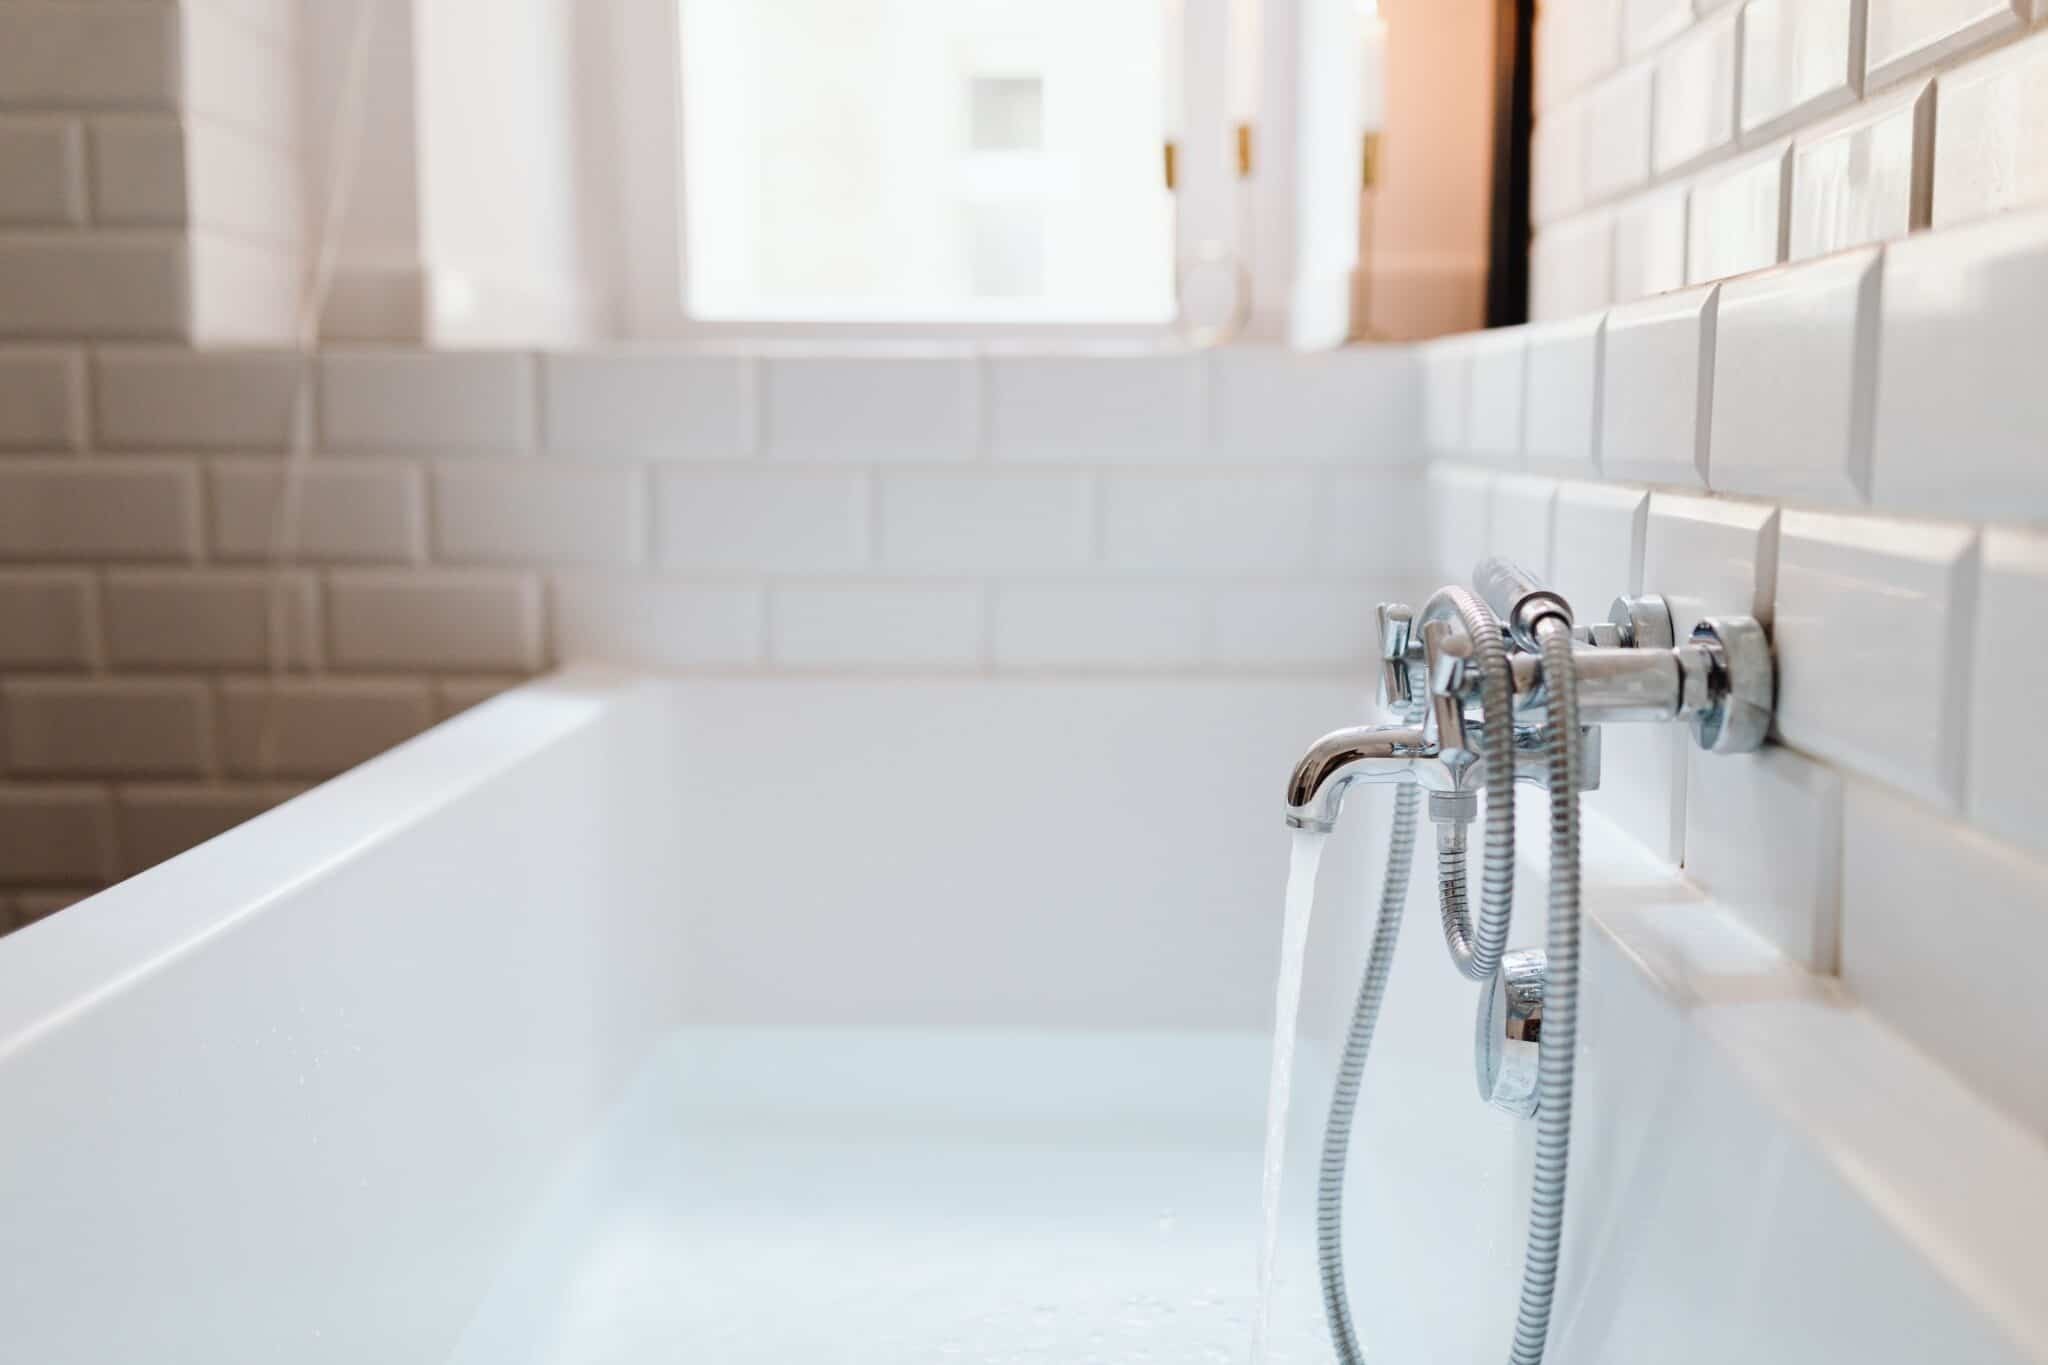 Billig og effektiv reparation af badekar